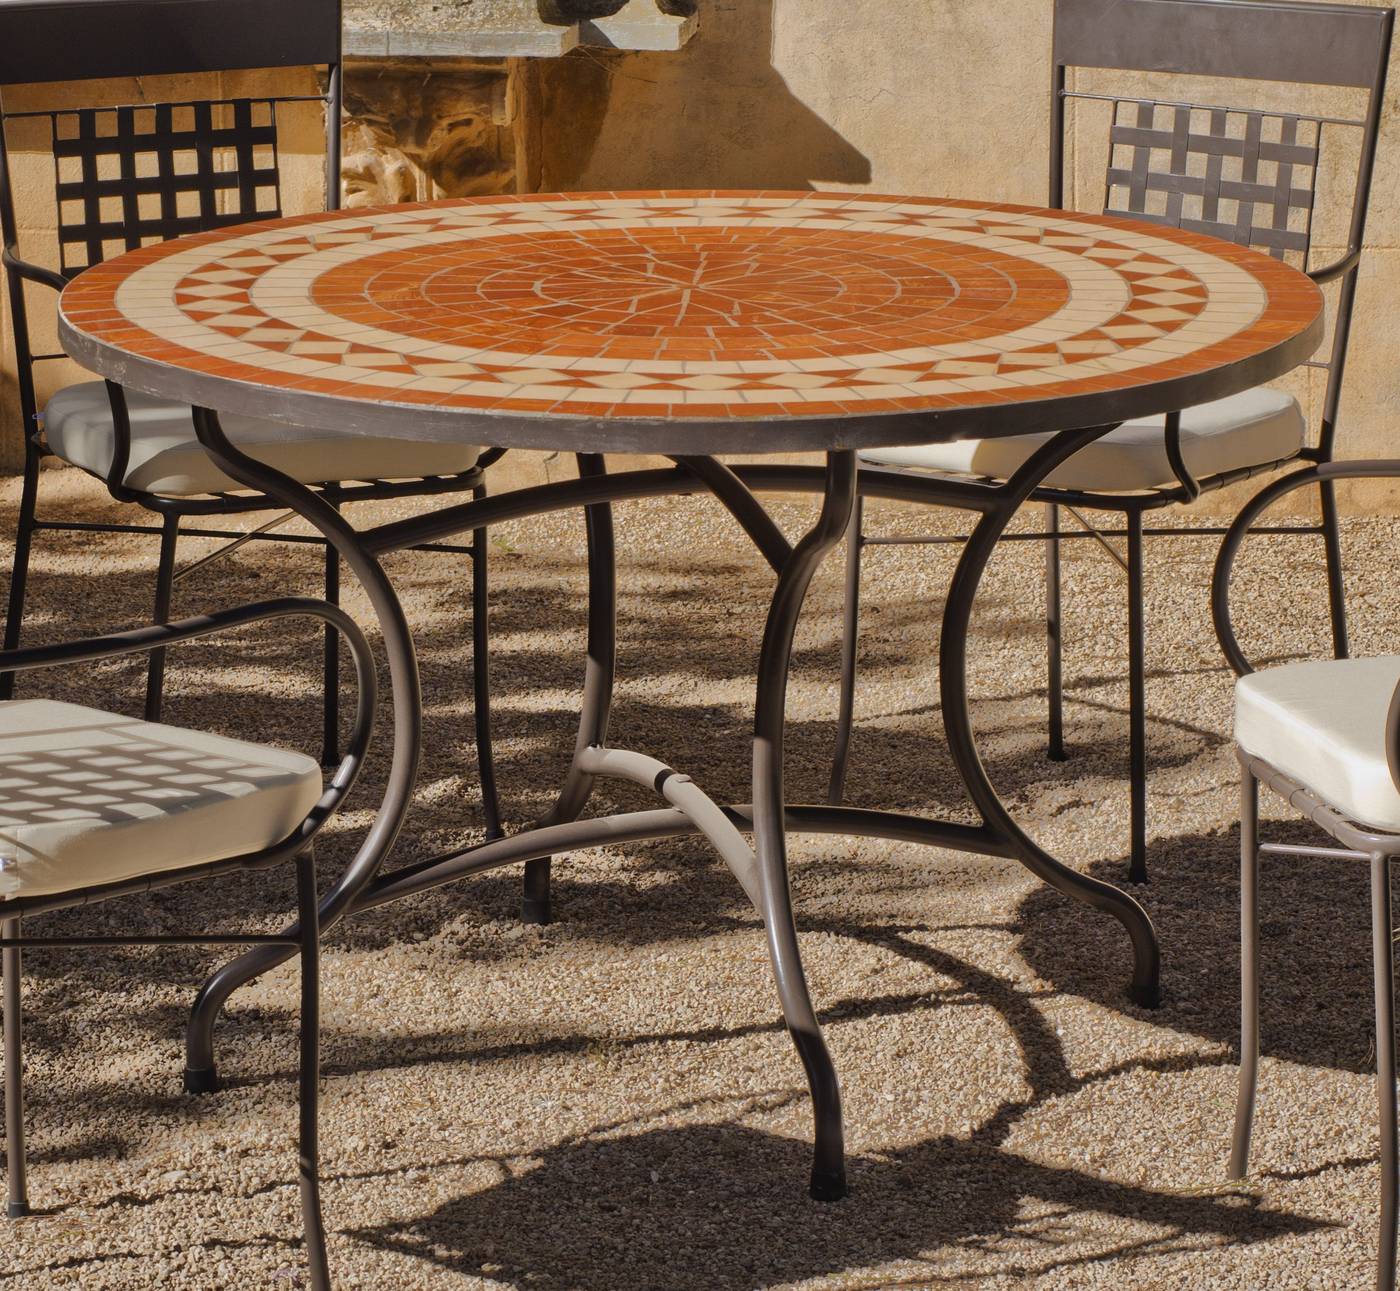 Conjunto Mosaico Lorni-Vigo 120-6 - Conjunto de forja para jardín: 1 mesa con panel mosaico + 6 sillones de forja + 6 cojines